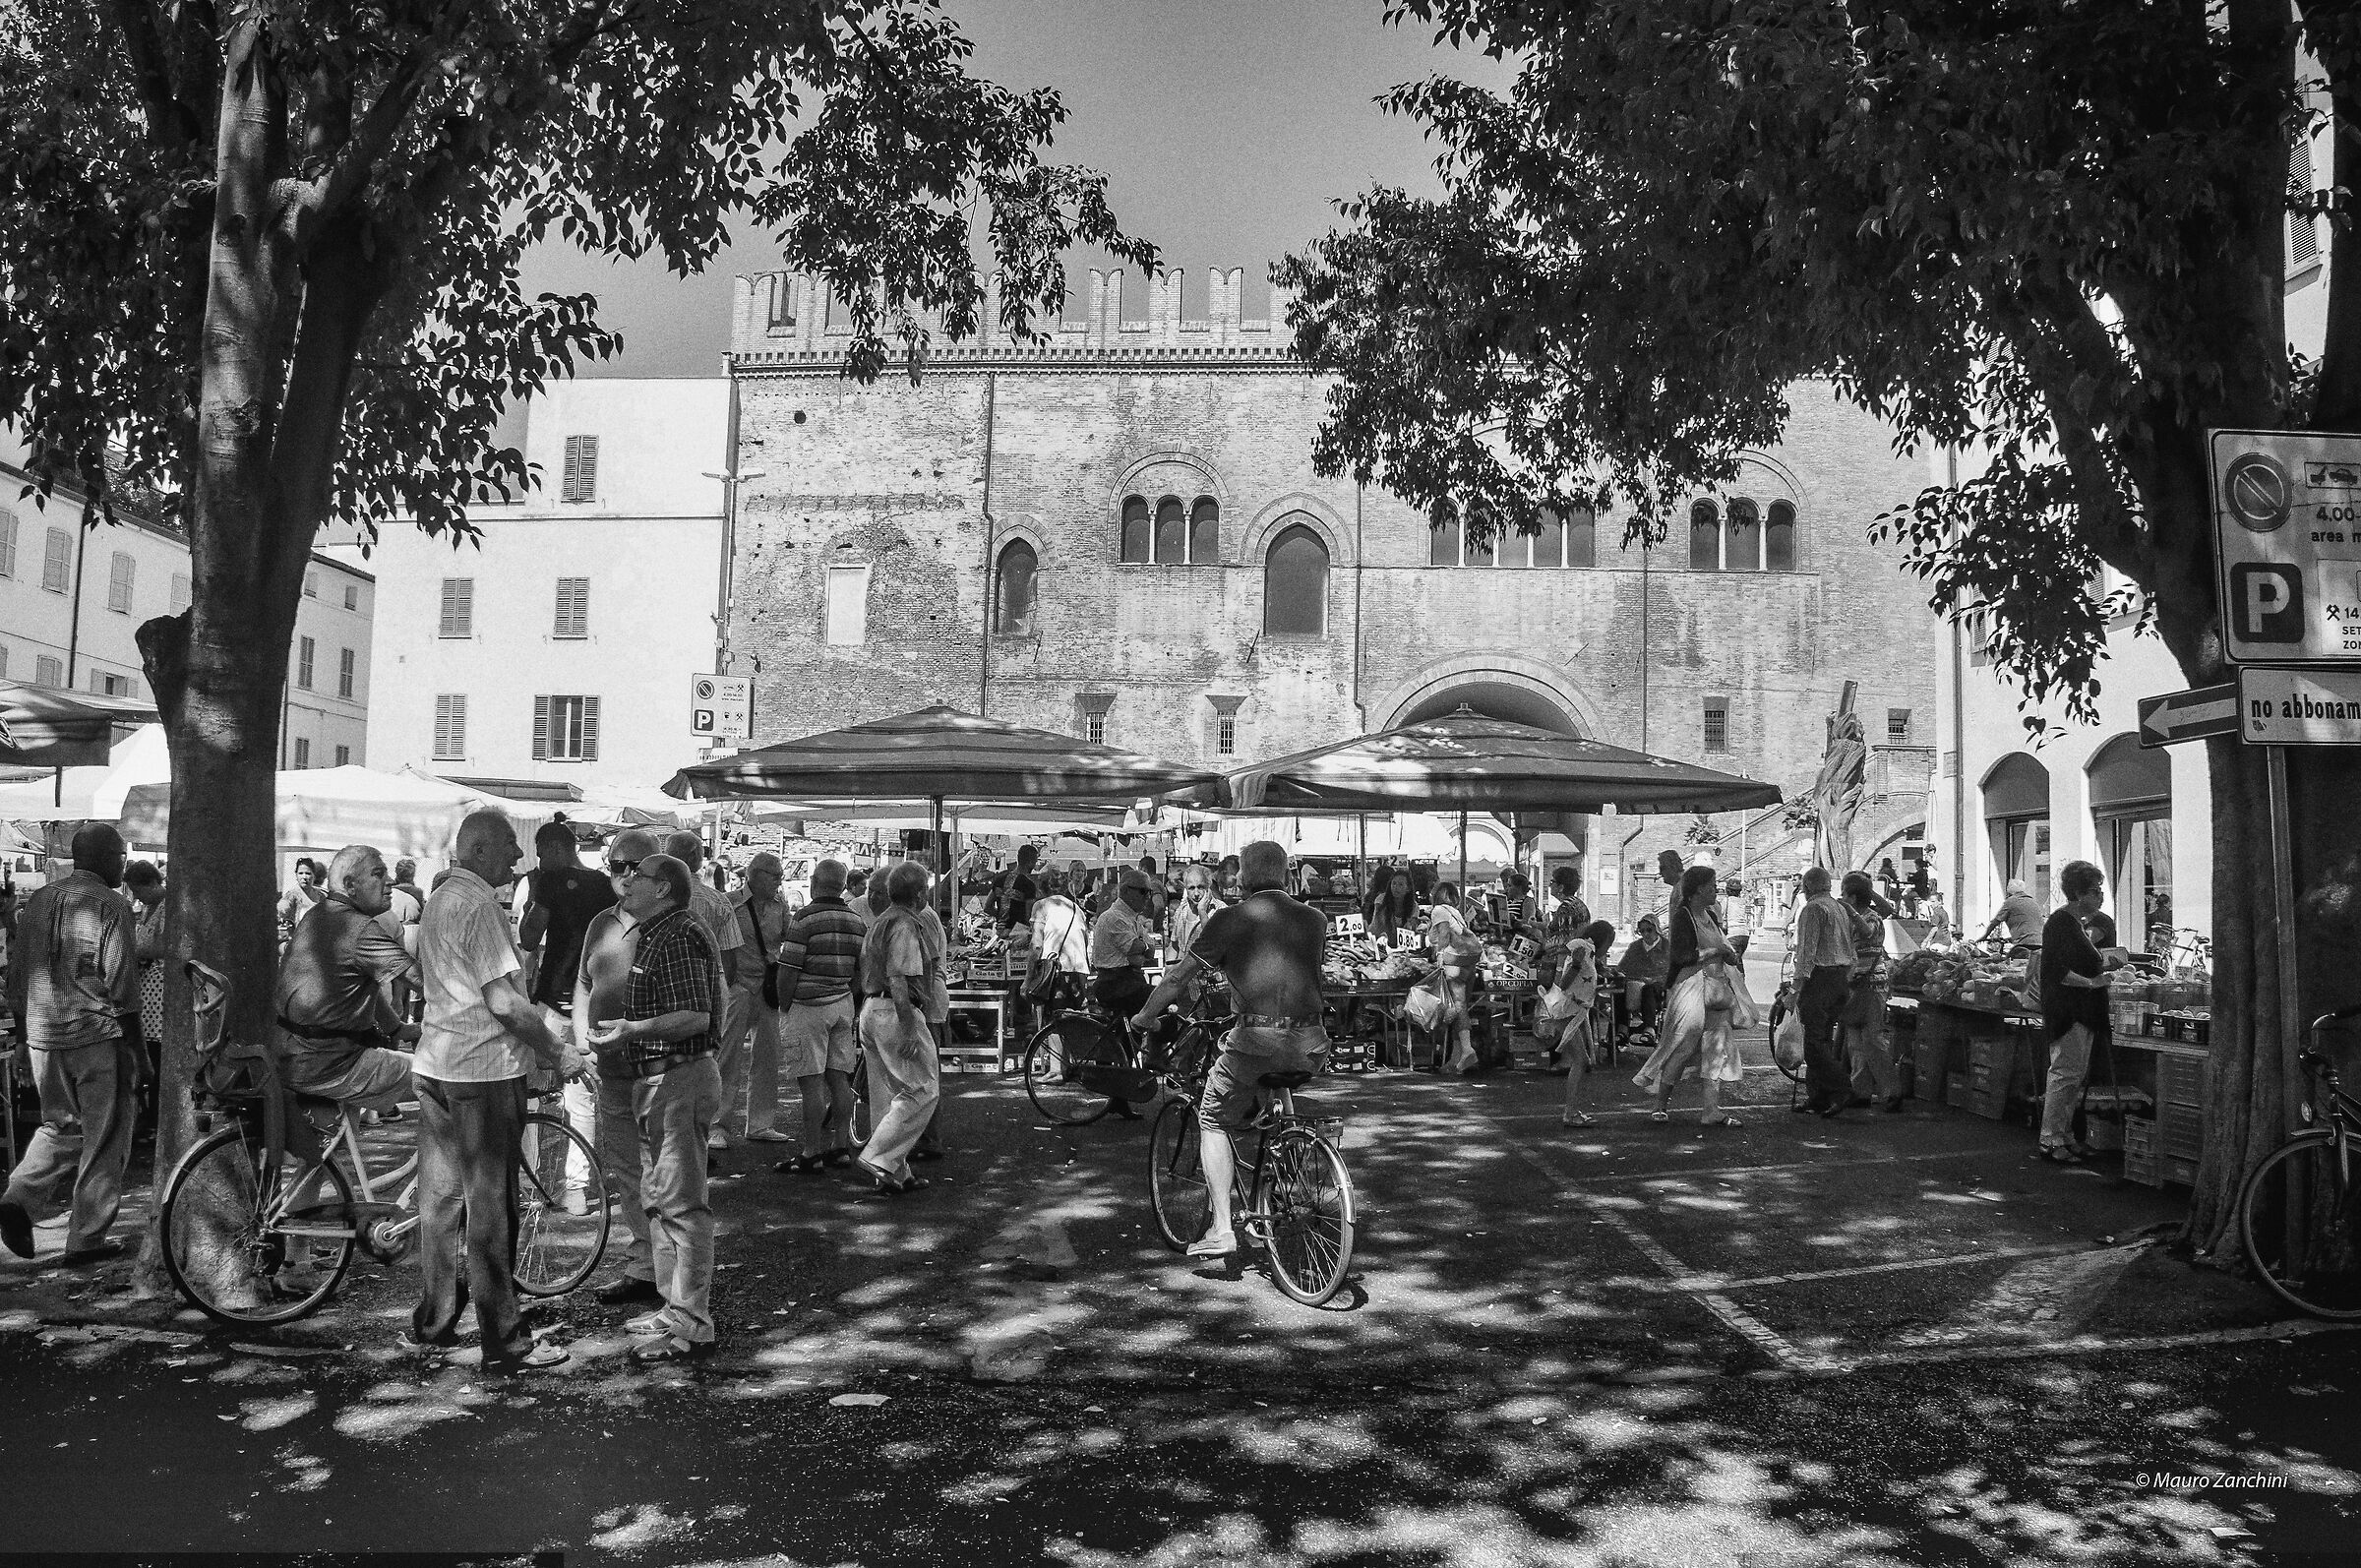 Faenza market square...